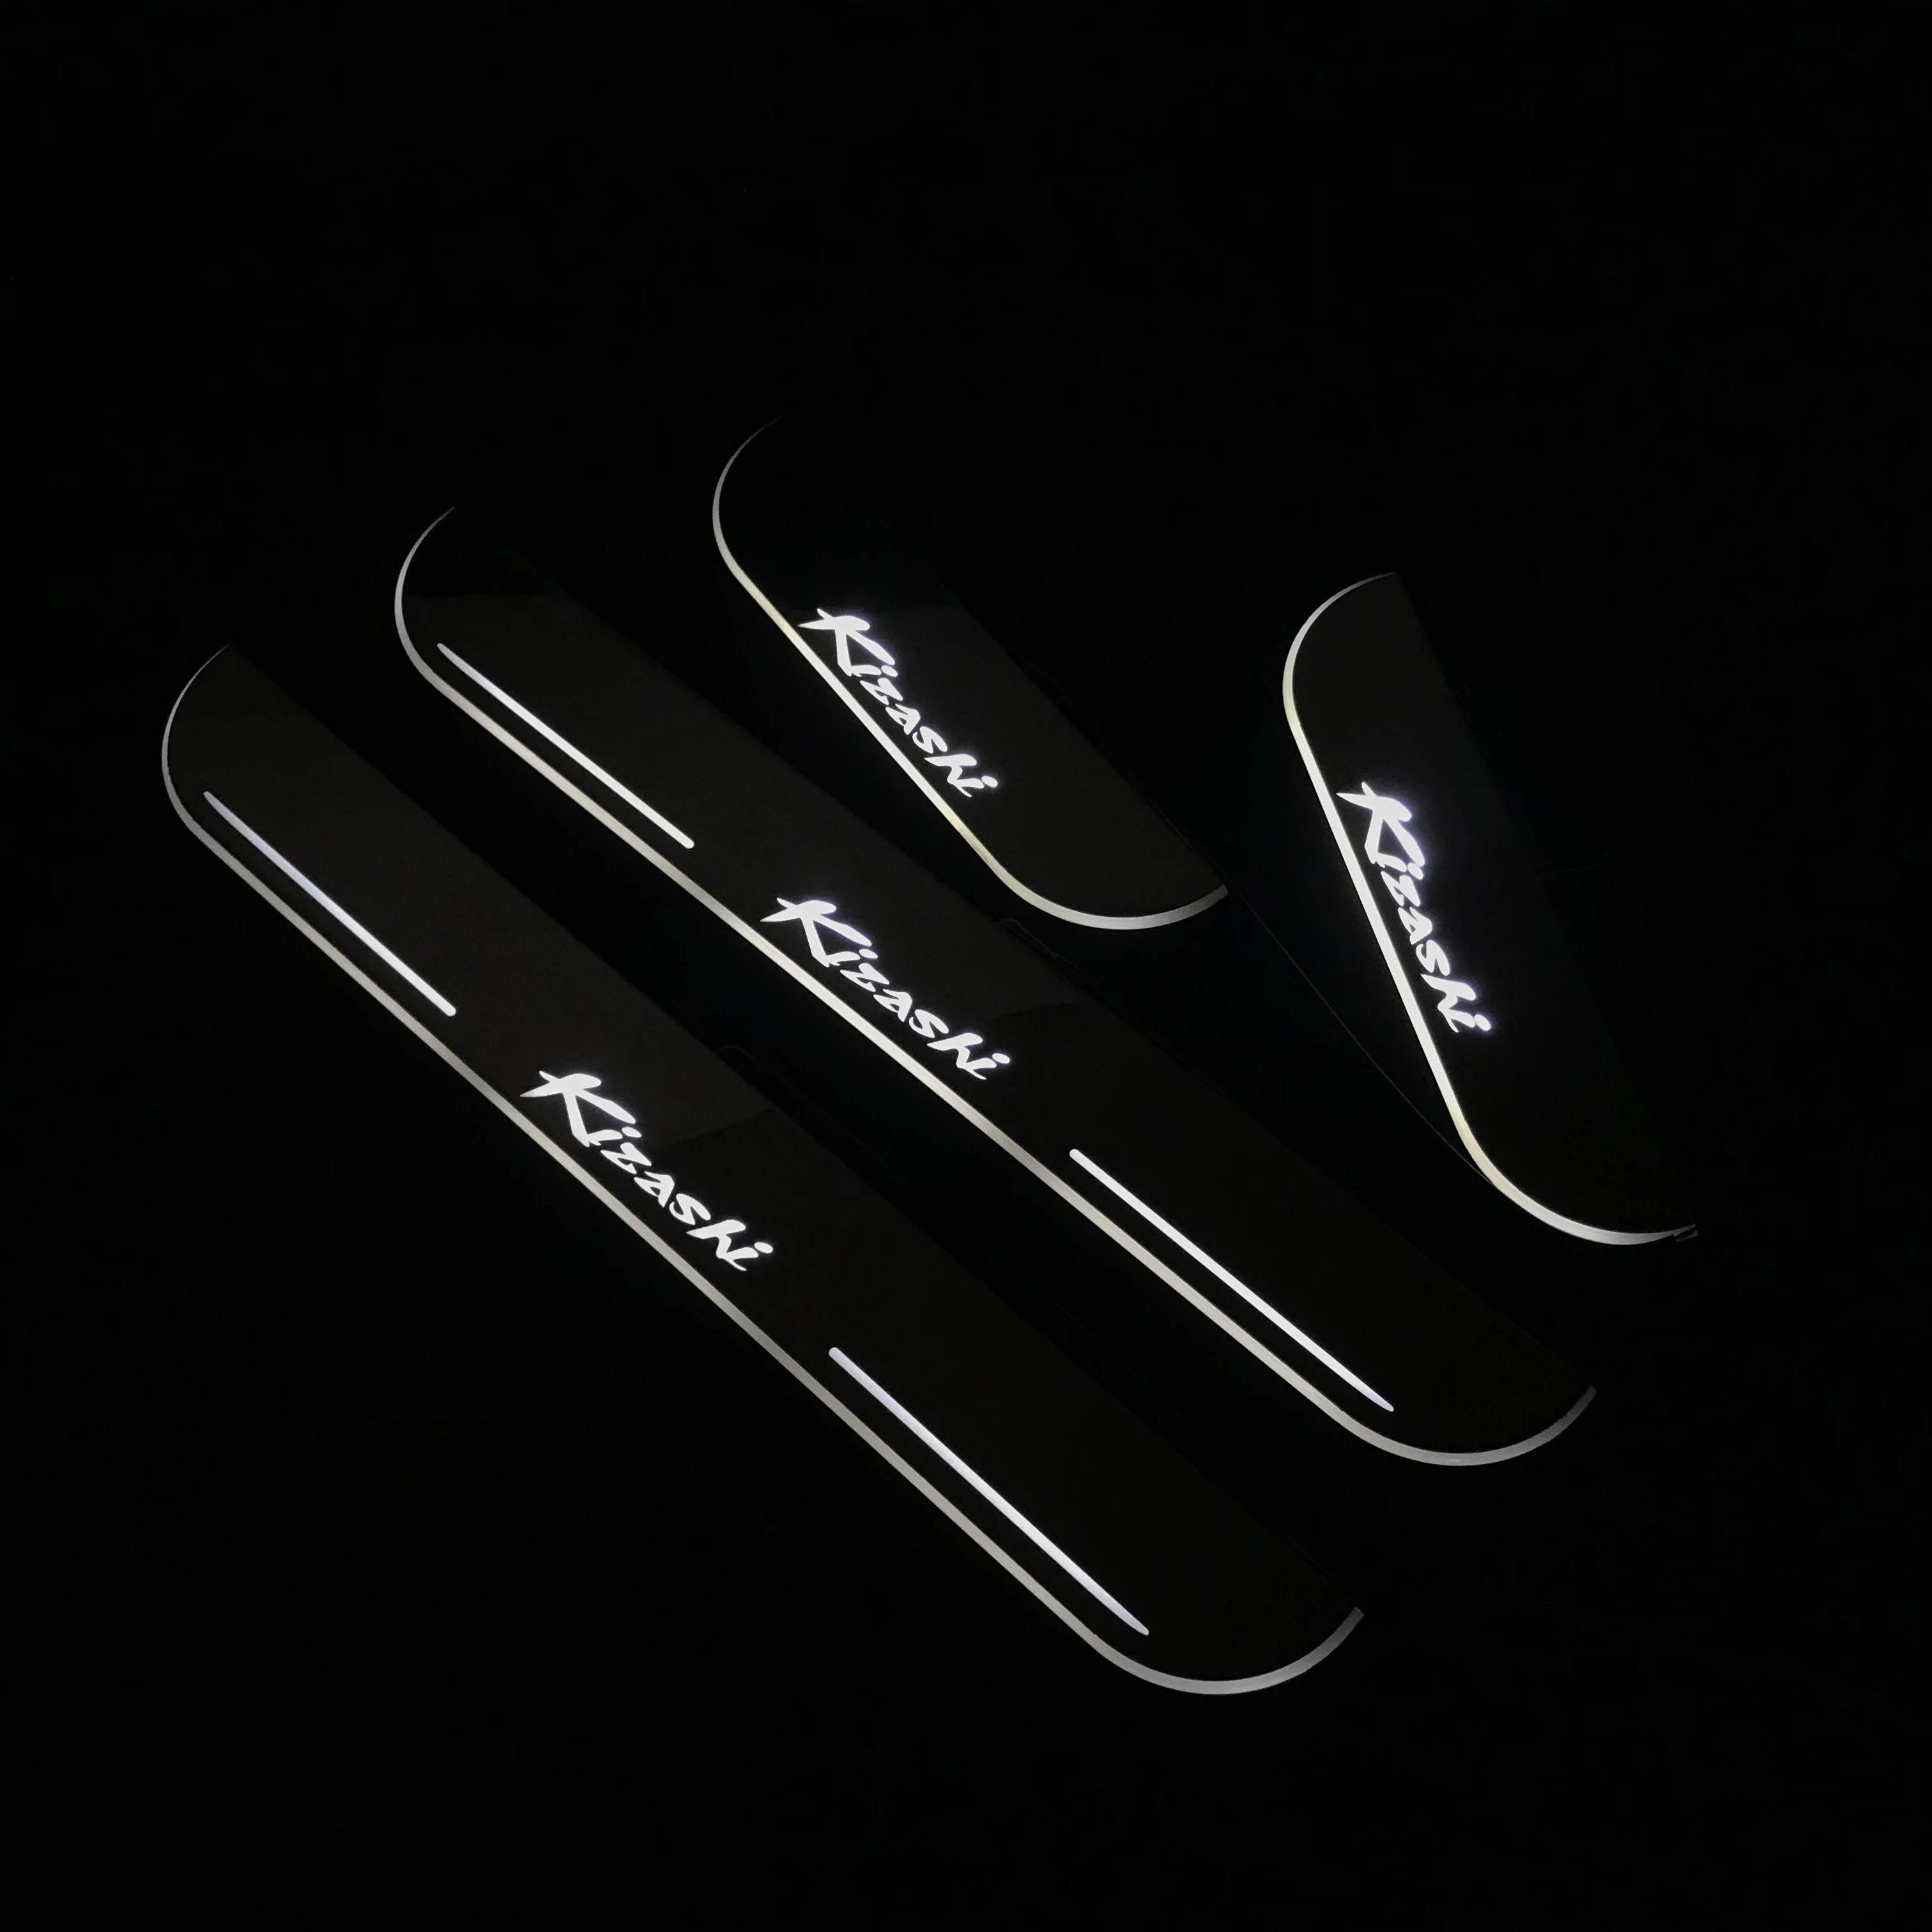 RQXR led движущиеся двери потертости для Suzuki Kizashi динамический порог пластина плоская подкладка наложения потока/фиксированный свет, 4 шт